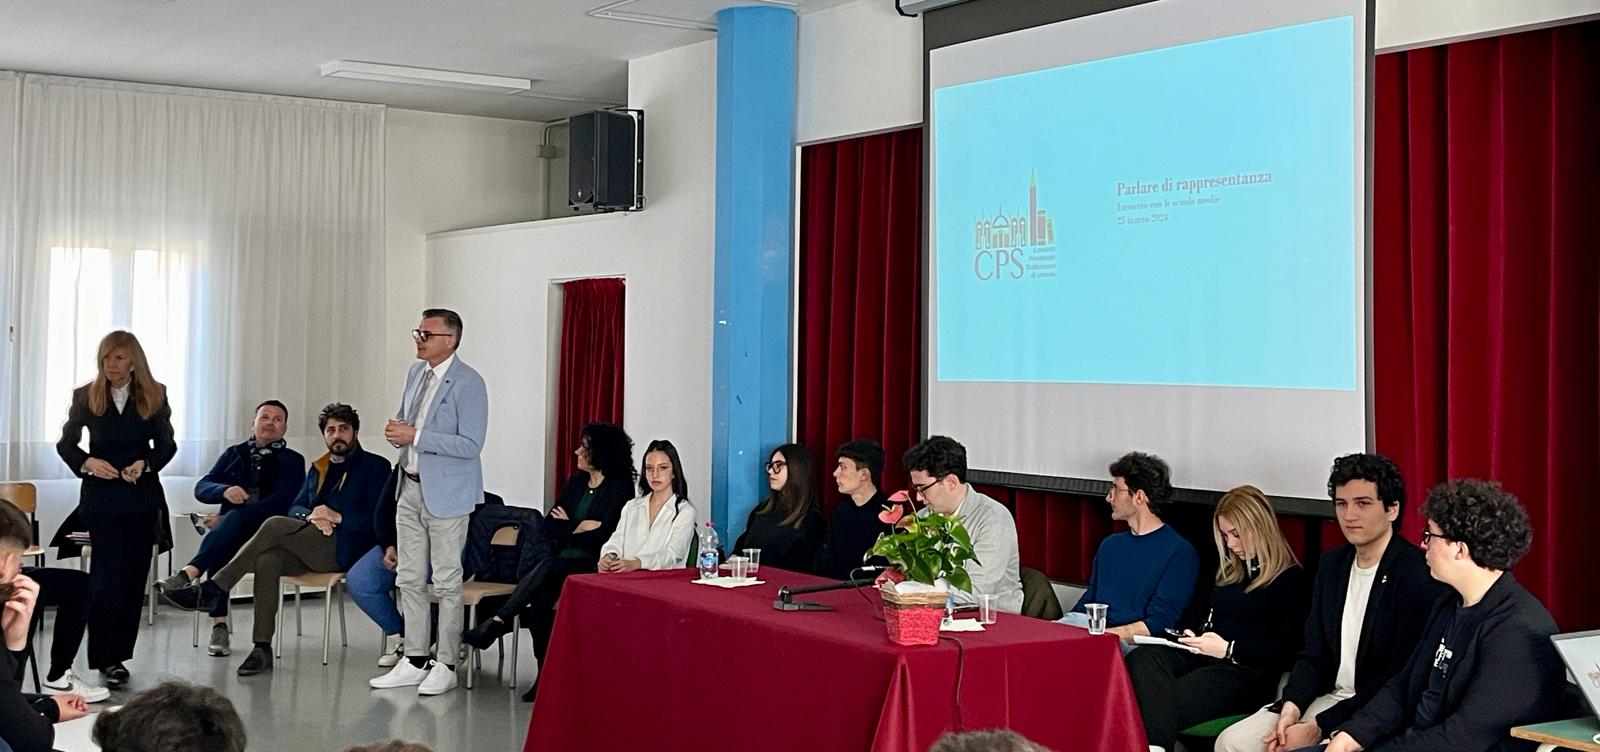 La Consulta provinciale degli studenti di Venezia in visita a Chioggia